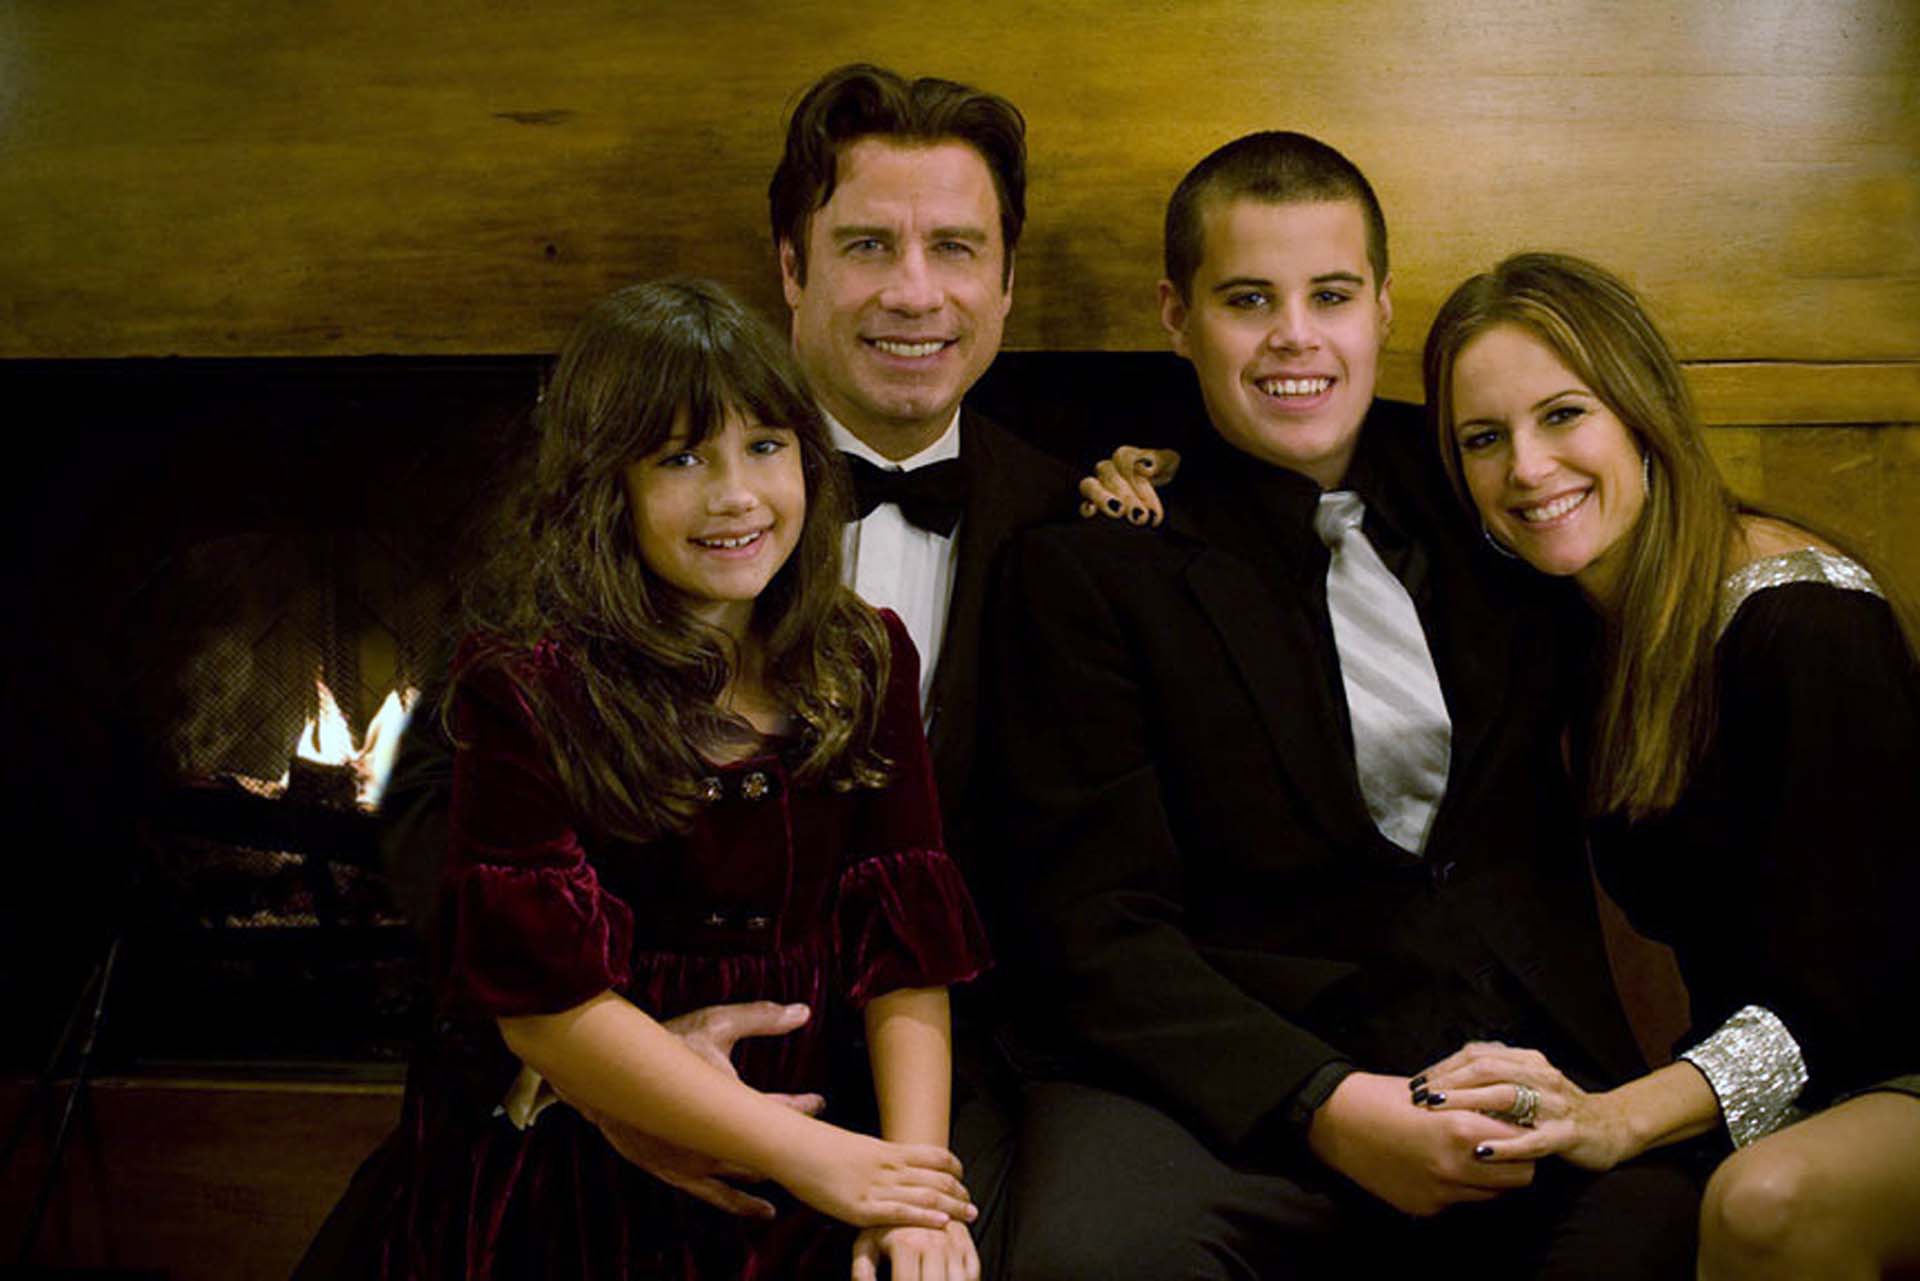 John Travolta junto a su esposa Kelly Preston y sus hijos Jett y Elle. Jett Travolta murió a los 16 años durante unas vacaciones familiares en Bahamas  (Rogers and Cowan via Getty Images)